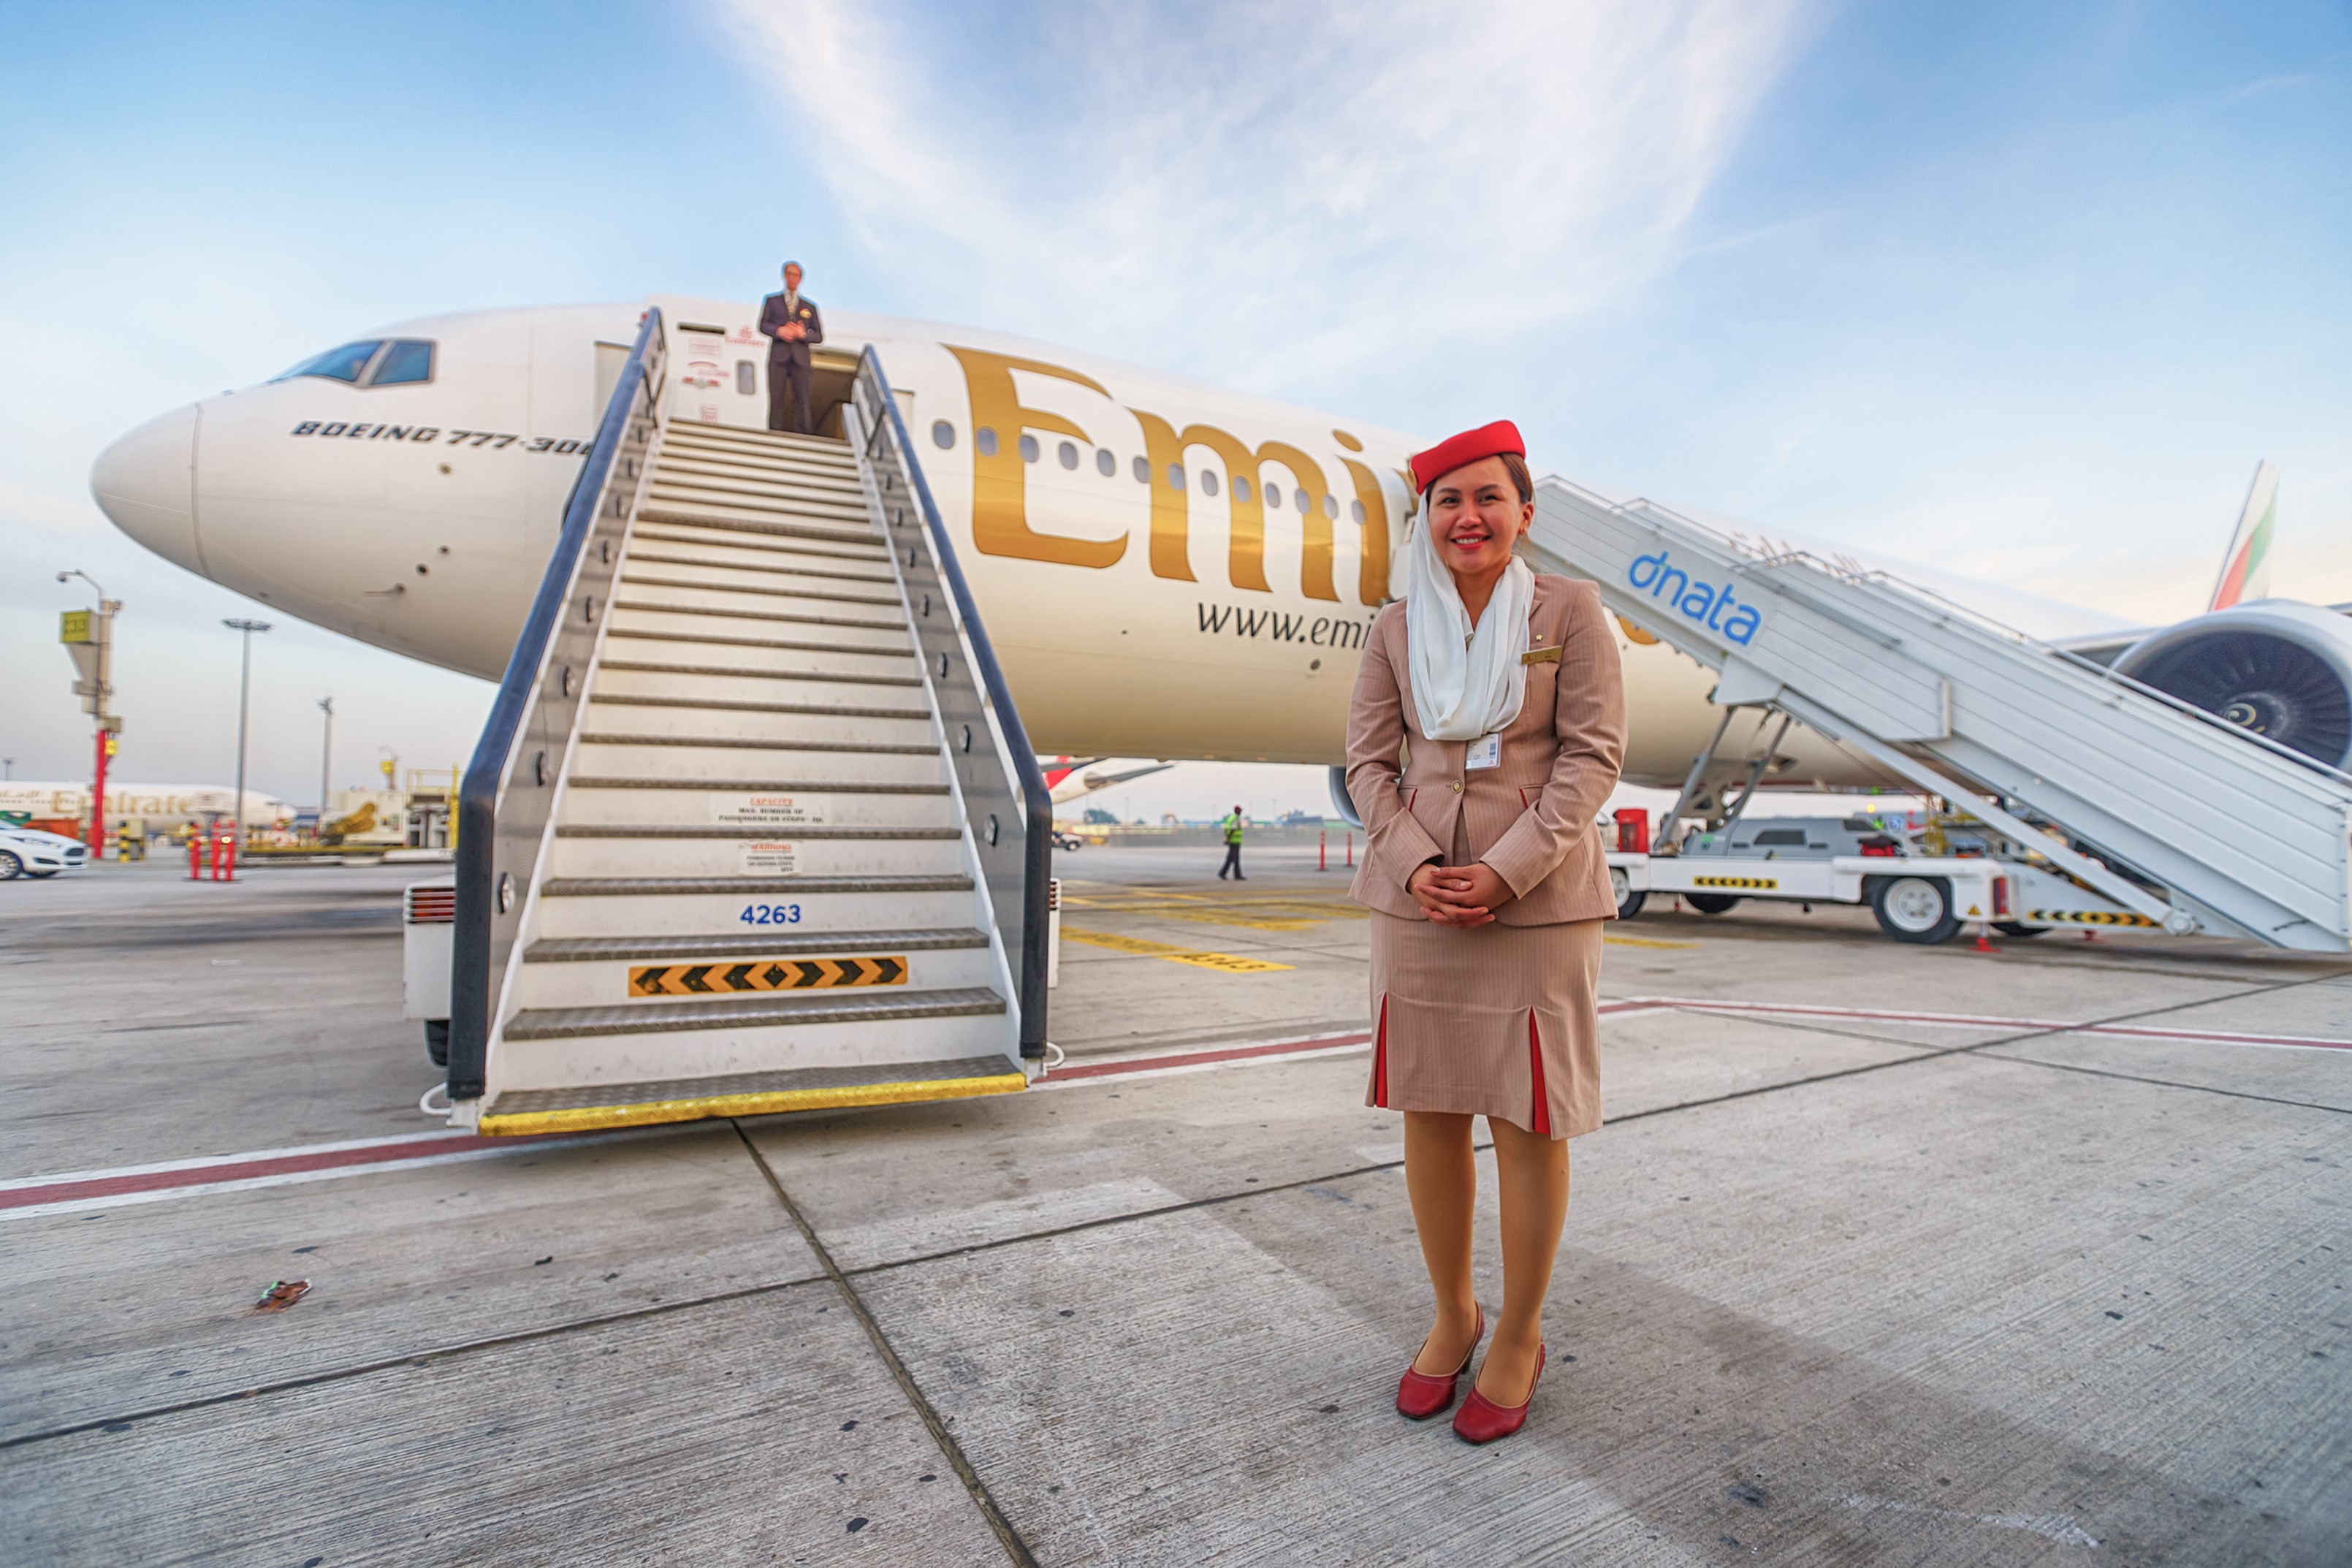 Emirates lanzó su primer mensaje en Colombia, que será el país de suramérica en el que comenzará operaciones. Competirá con Avianca.